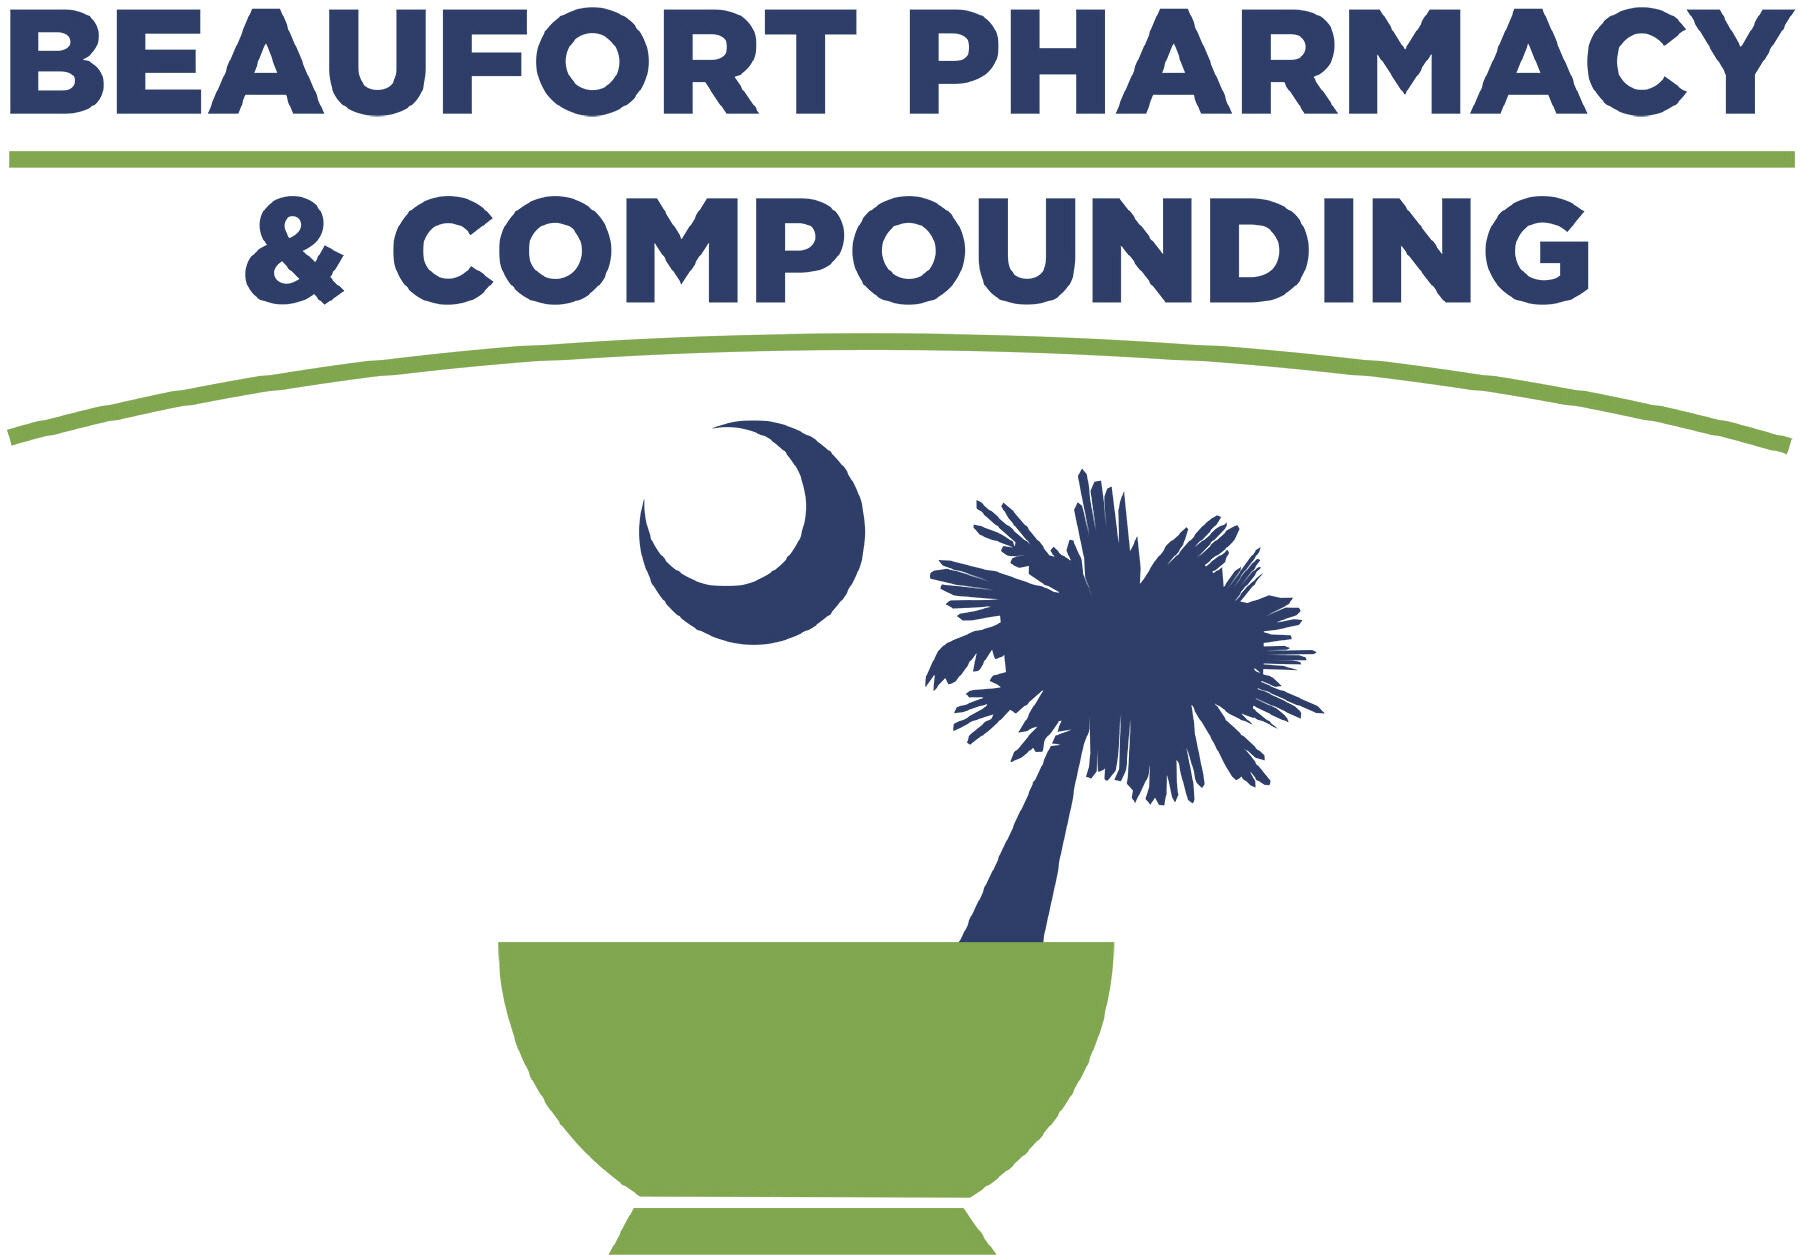 Beaufort Pharmacy